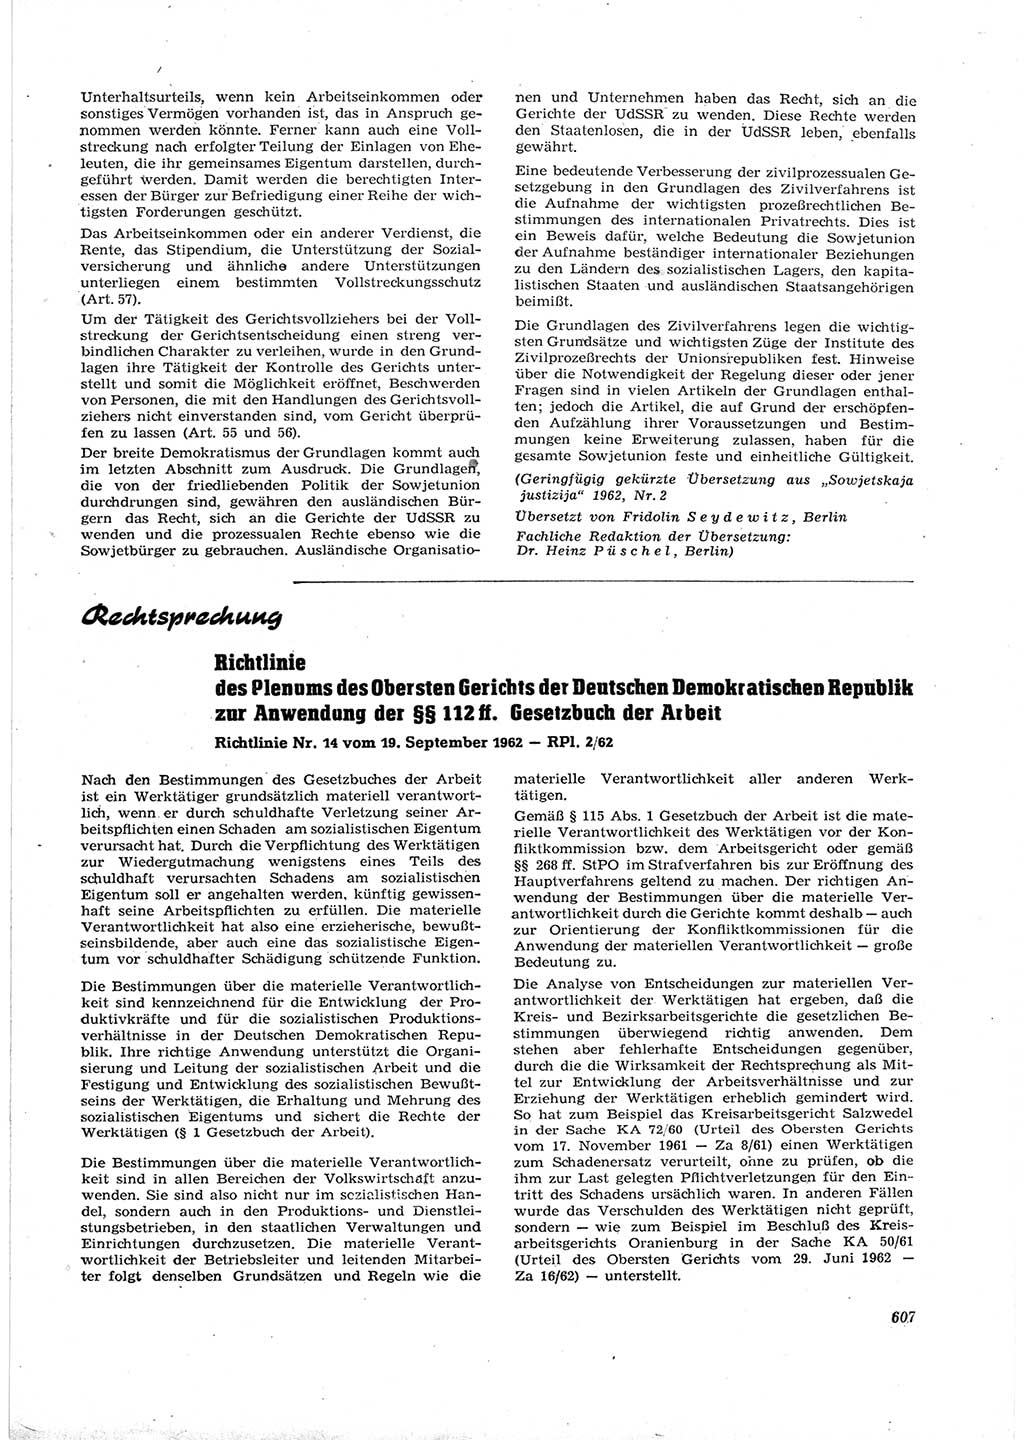 Neue Justiz (NJ), Zeitschrift für Recht und Rechtswissenschaft [Deutsche Demokratische Republik (DDR)], 16. Jahrgang 1962, Seite 607 (NJ DDR 1962, S. 607)